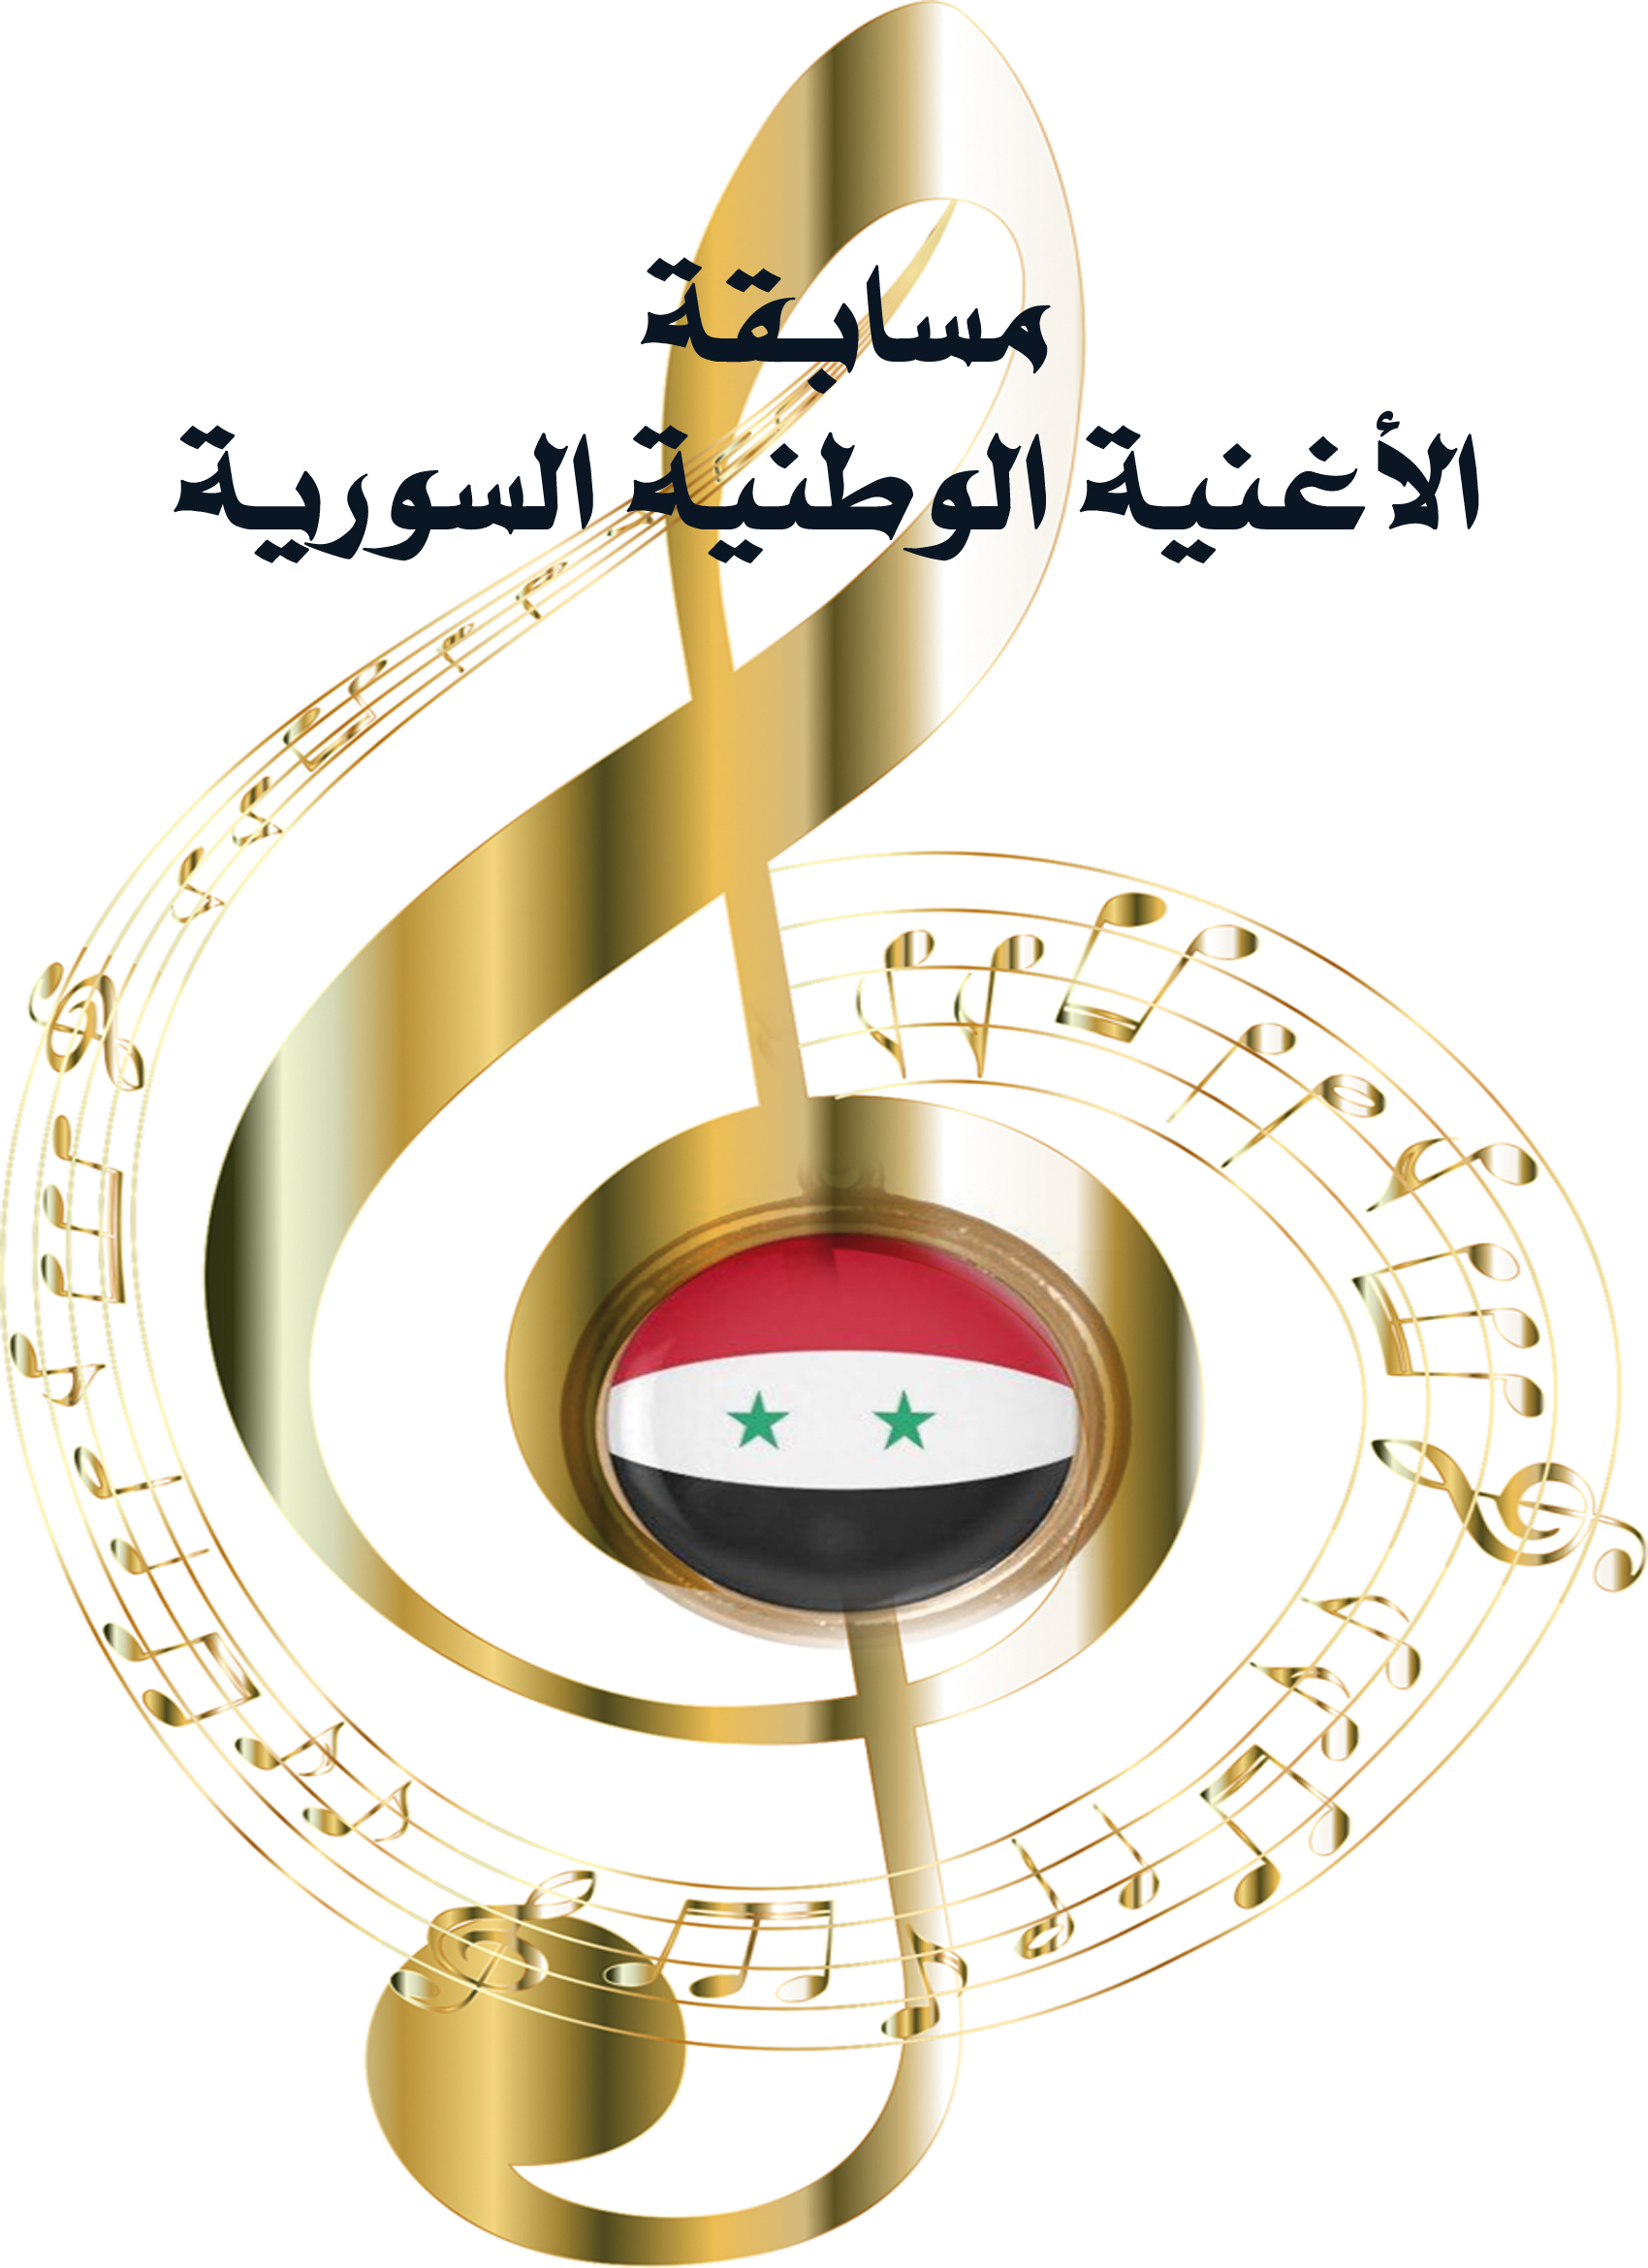 بعد إعلان نتائج مسابقة الأغنية الوطنية السورية